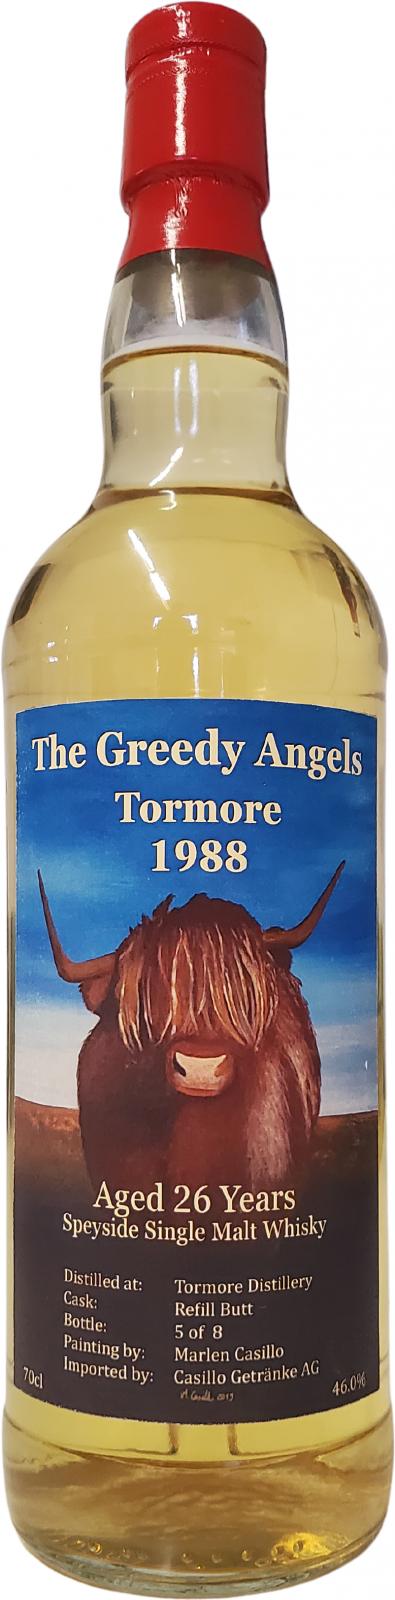 Tormore 1988 CG Refill Butt 46% 700ml